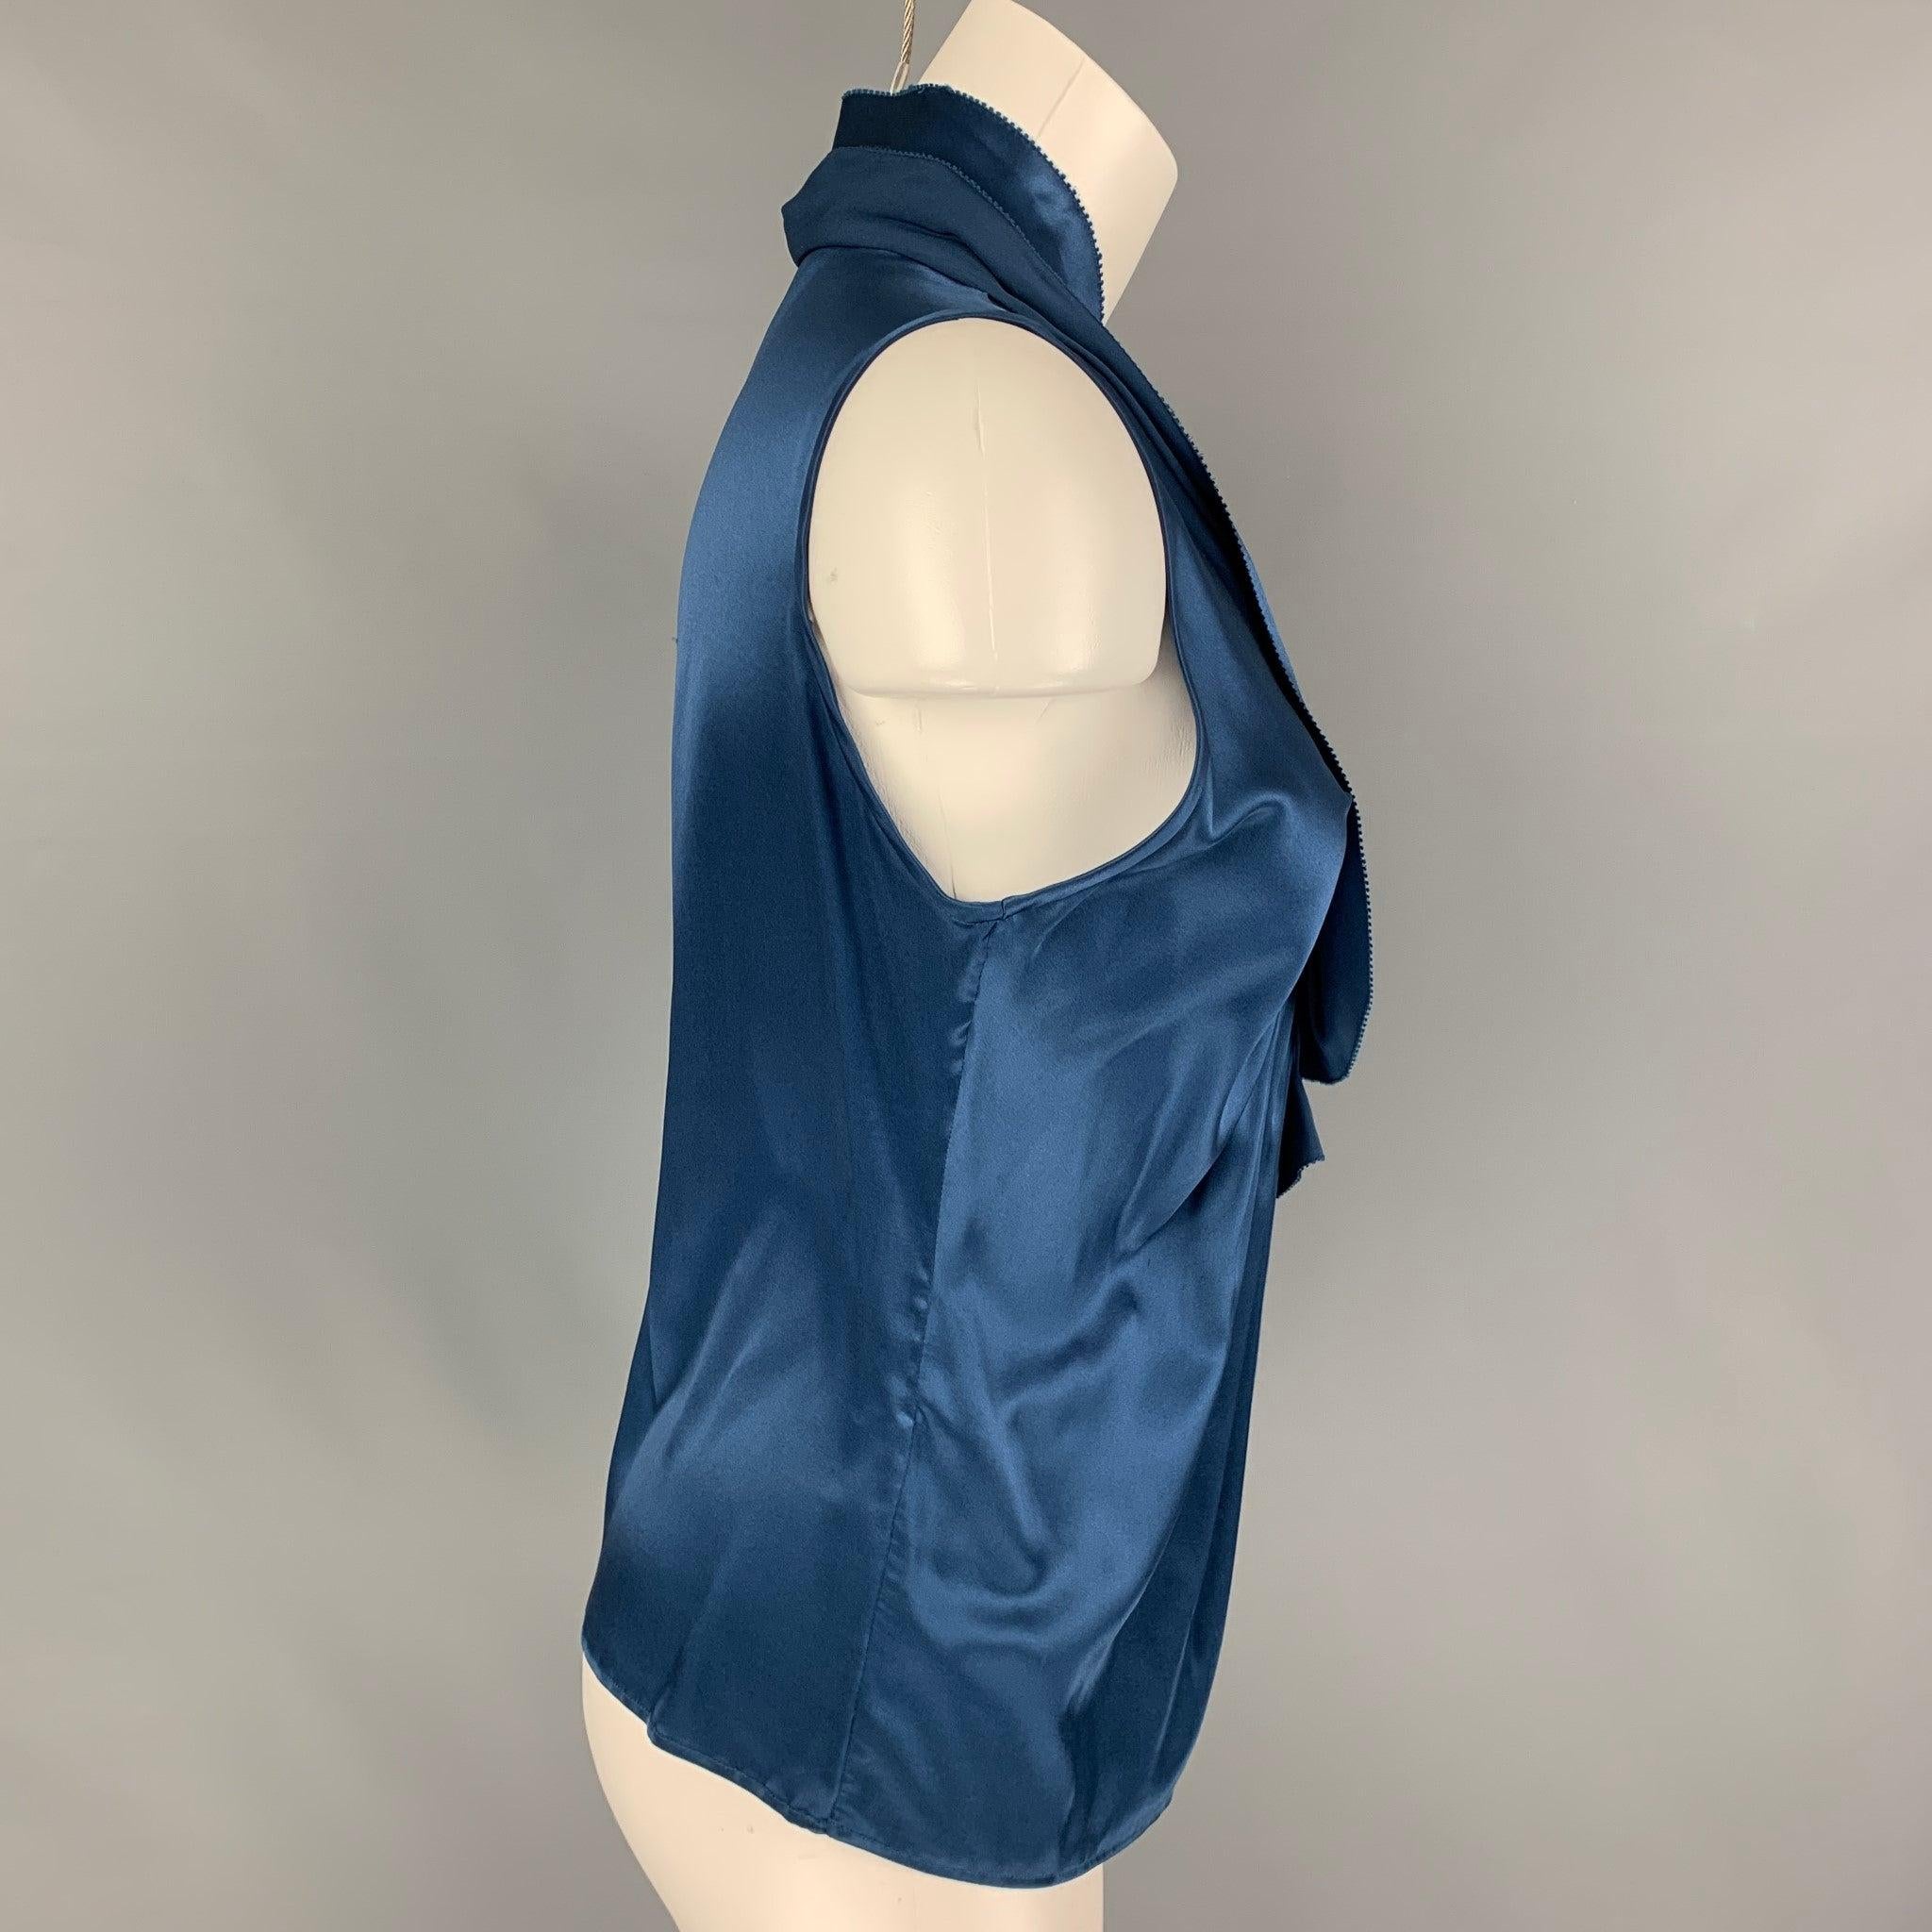 Die ETRO Bluse aus blauer Seide hat ein gerafftes Design, einen V-Ausschnitt und ist ärmellos. Hergestellt in Italien.
Sehr gut
Gebrauchtes Zustand. 

Markiert:   40 

Abmessungen: 
 
Schultern: 12,5 Zoll  Büste: 28 Zoll  Länge: 21,5 Zoll 

  
  
